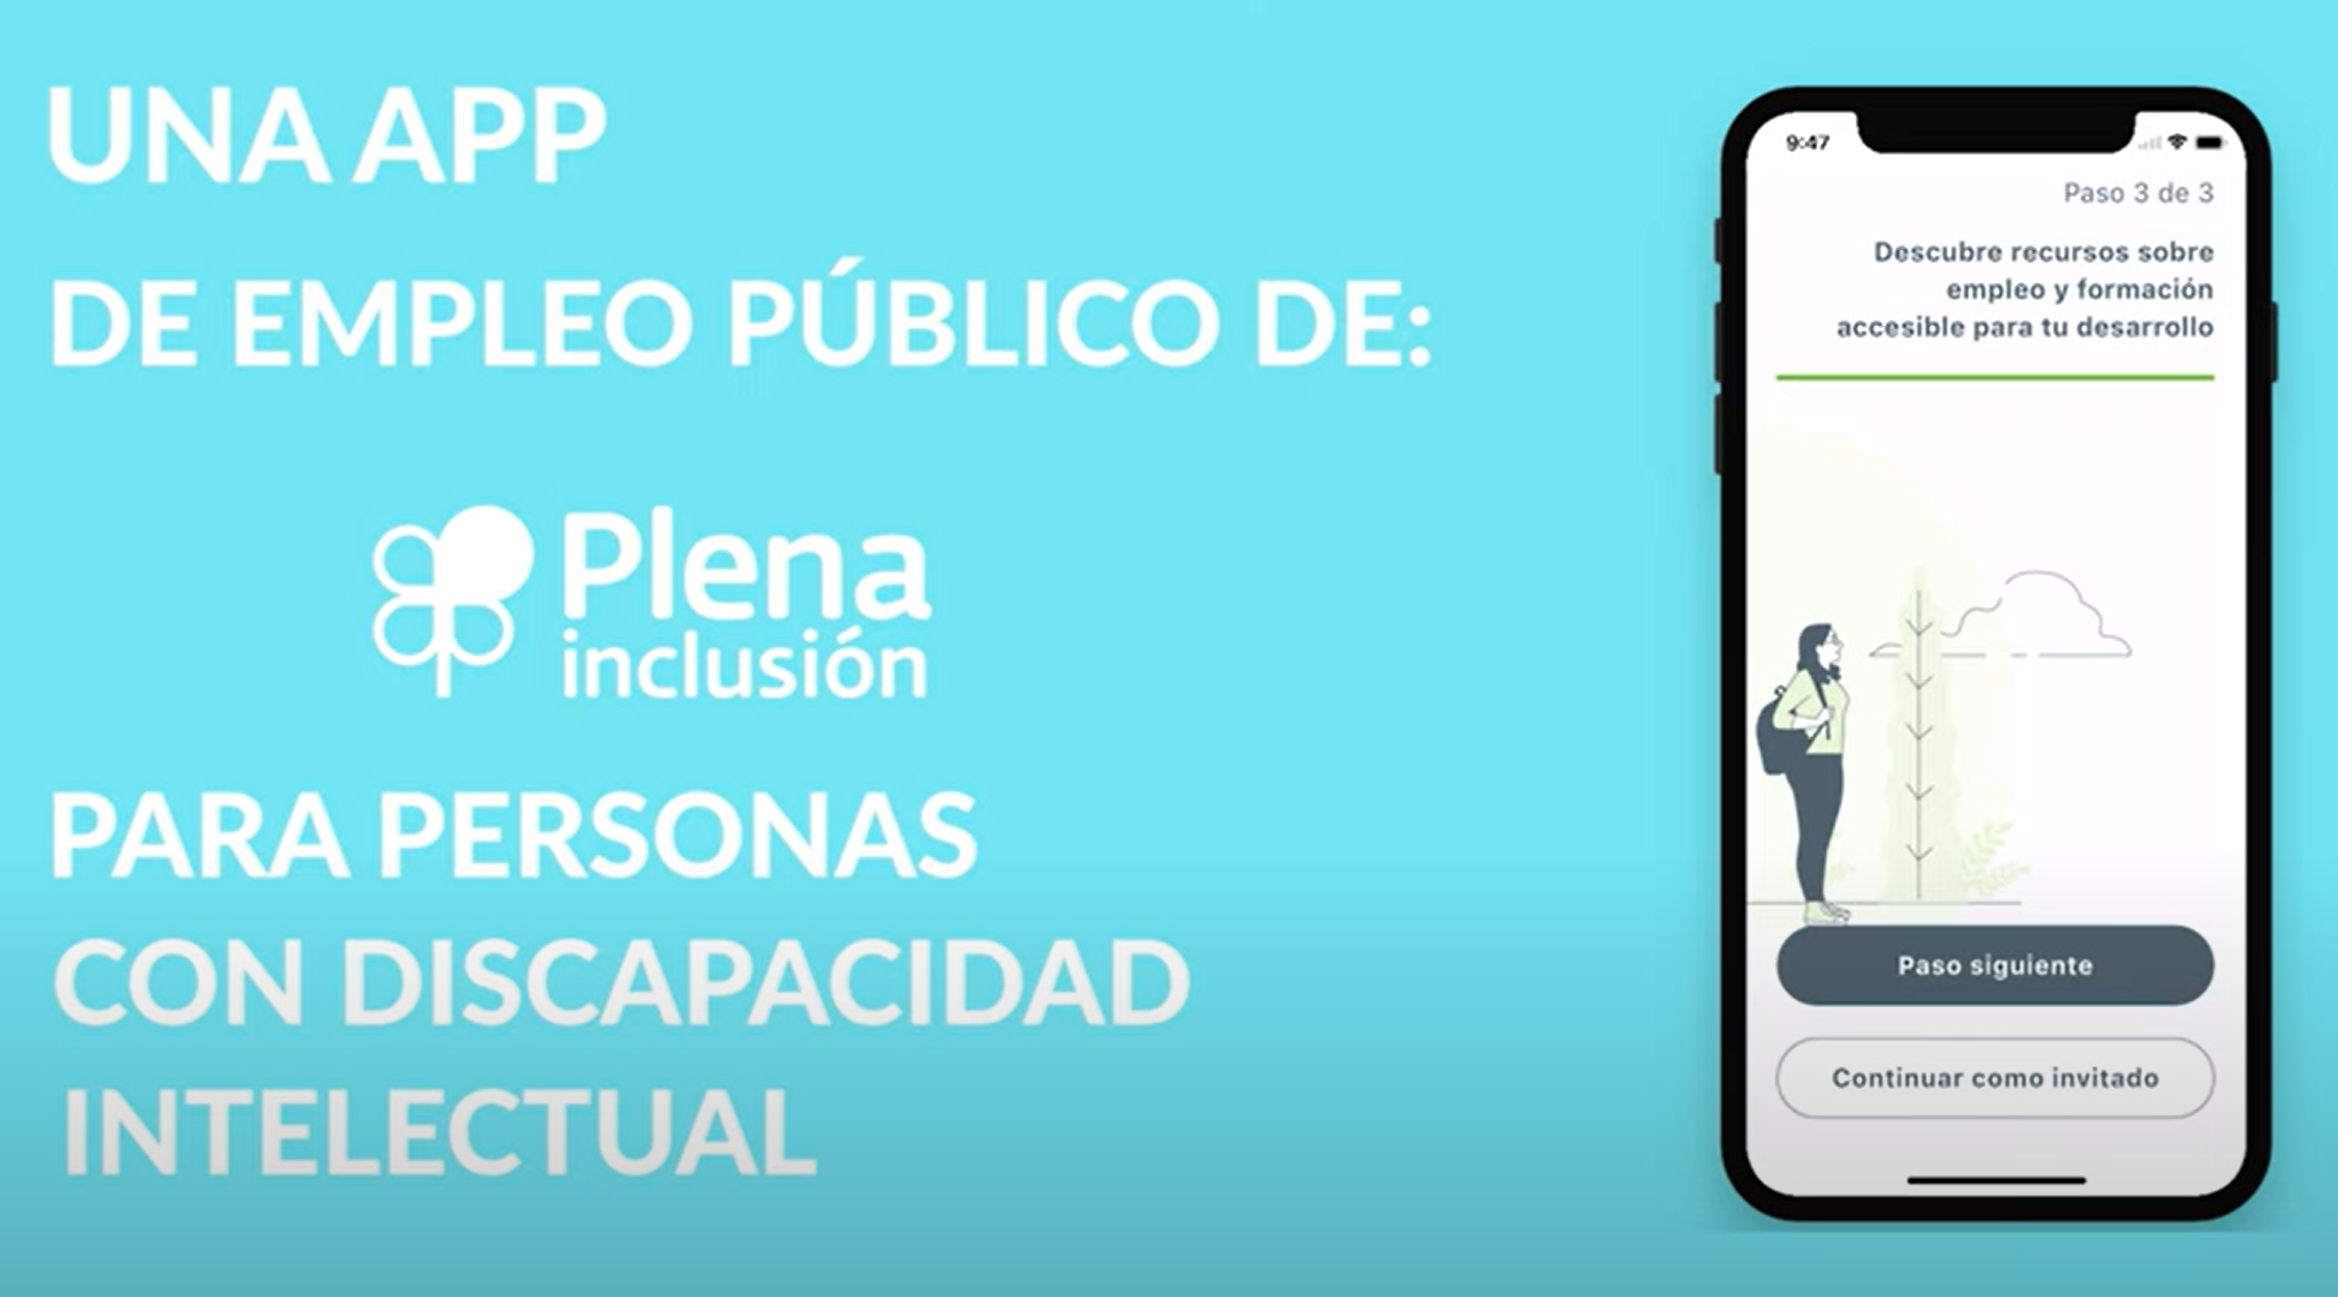 Ir a Plena inclusión desarrolla una app que facilita a las personas con discapacidad intelectual información sobre nuevas ofertas de empleo público